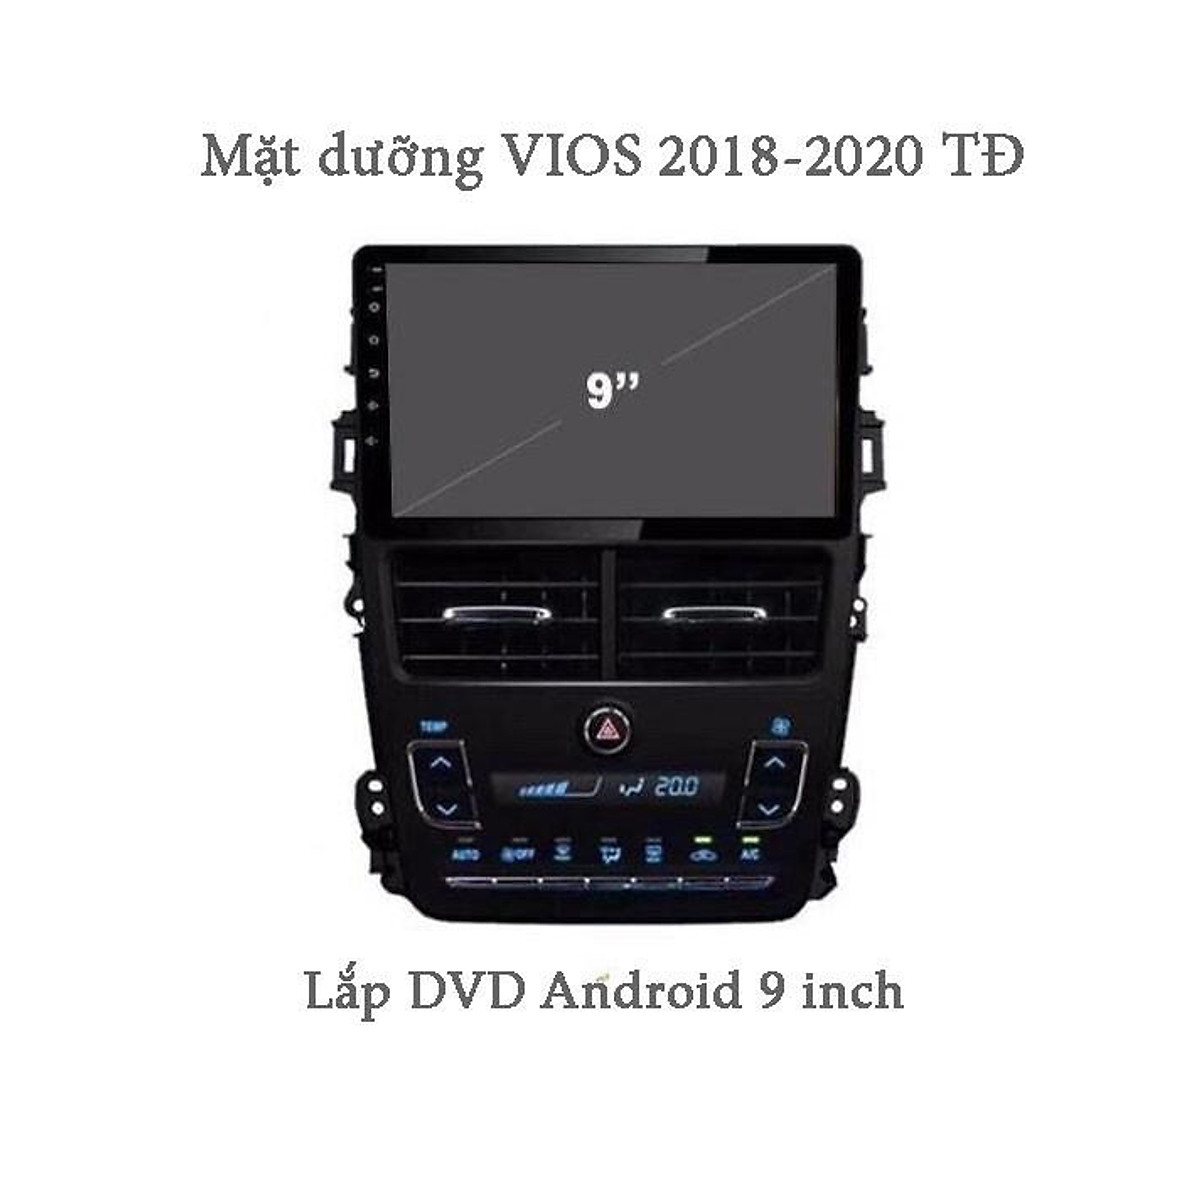 Mặt dưỡng cho xe TOYOTA VIOS 2018-2020 tự động lắp DVD Android 9 inch